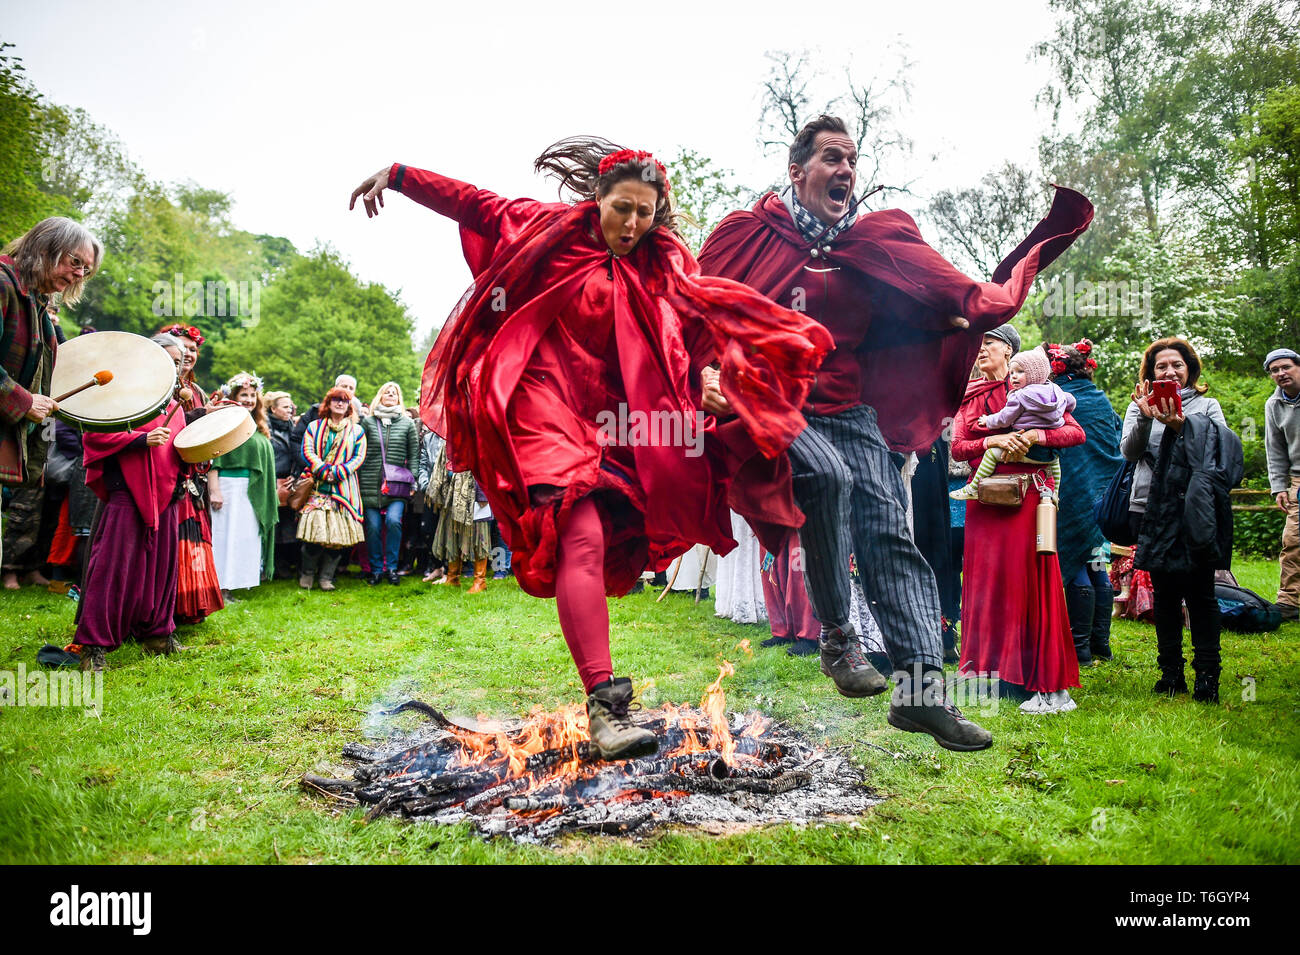 Un couple sur le feu pendant les fêtes de Beltane à Glastonbury Chalice Well, où les gens se rassemblent pour observer une interprétation moderne de l'antique fertilité païenne celtique sacre du printemps. Banque D'Images